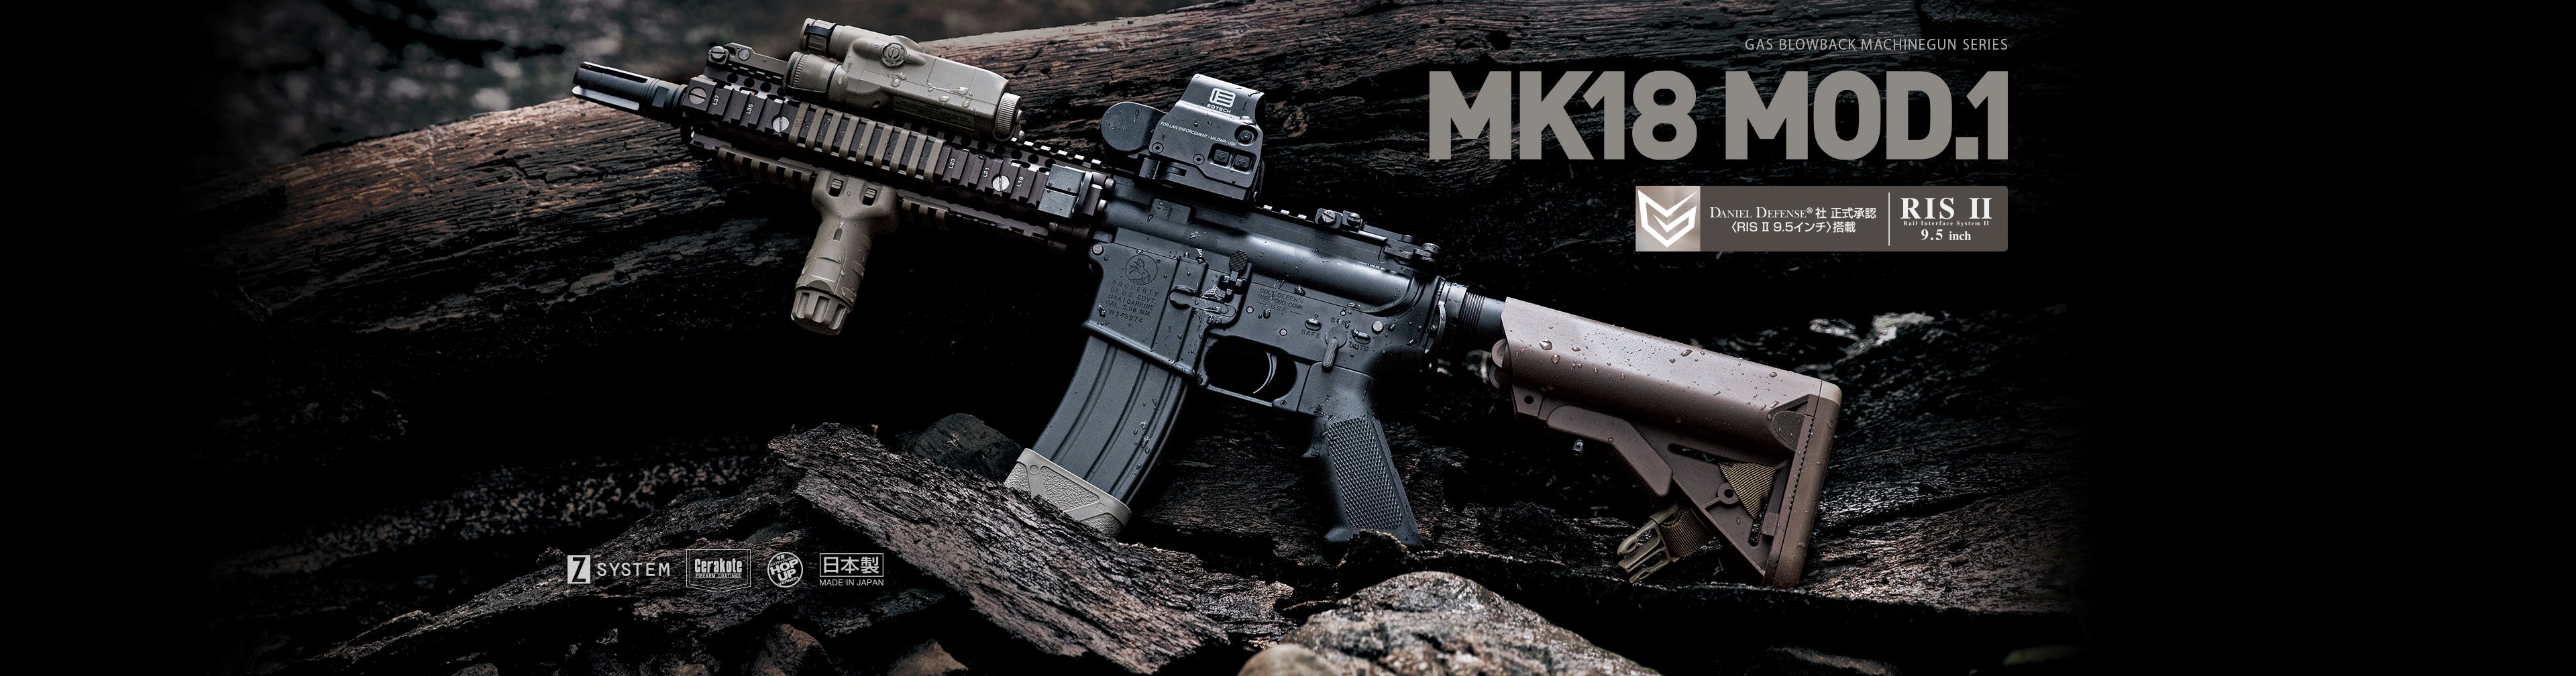 Tokyo Marui MK18 MOD.1 GBB Rifle